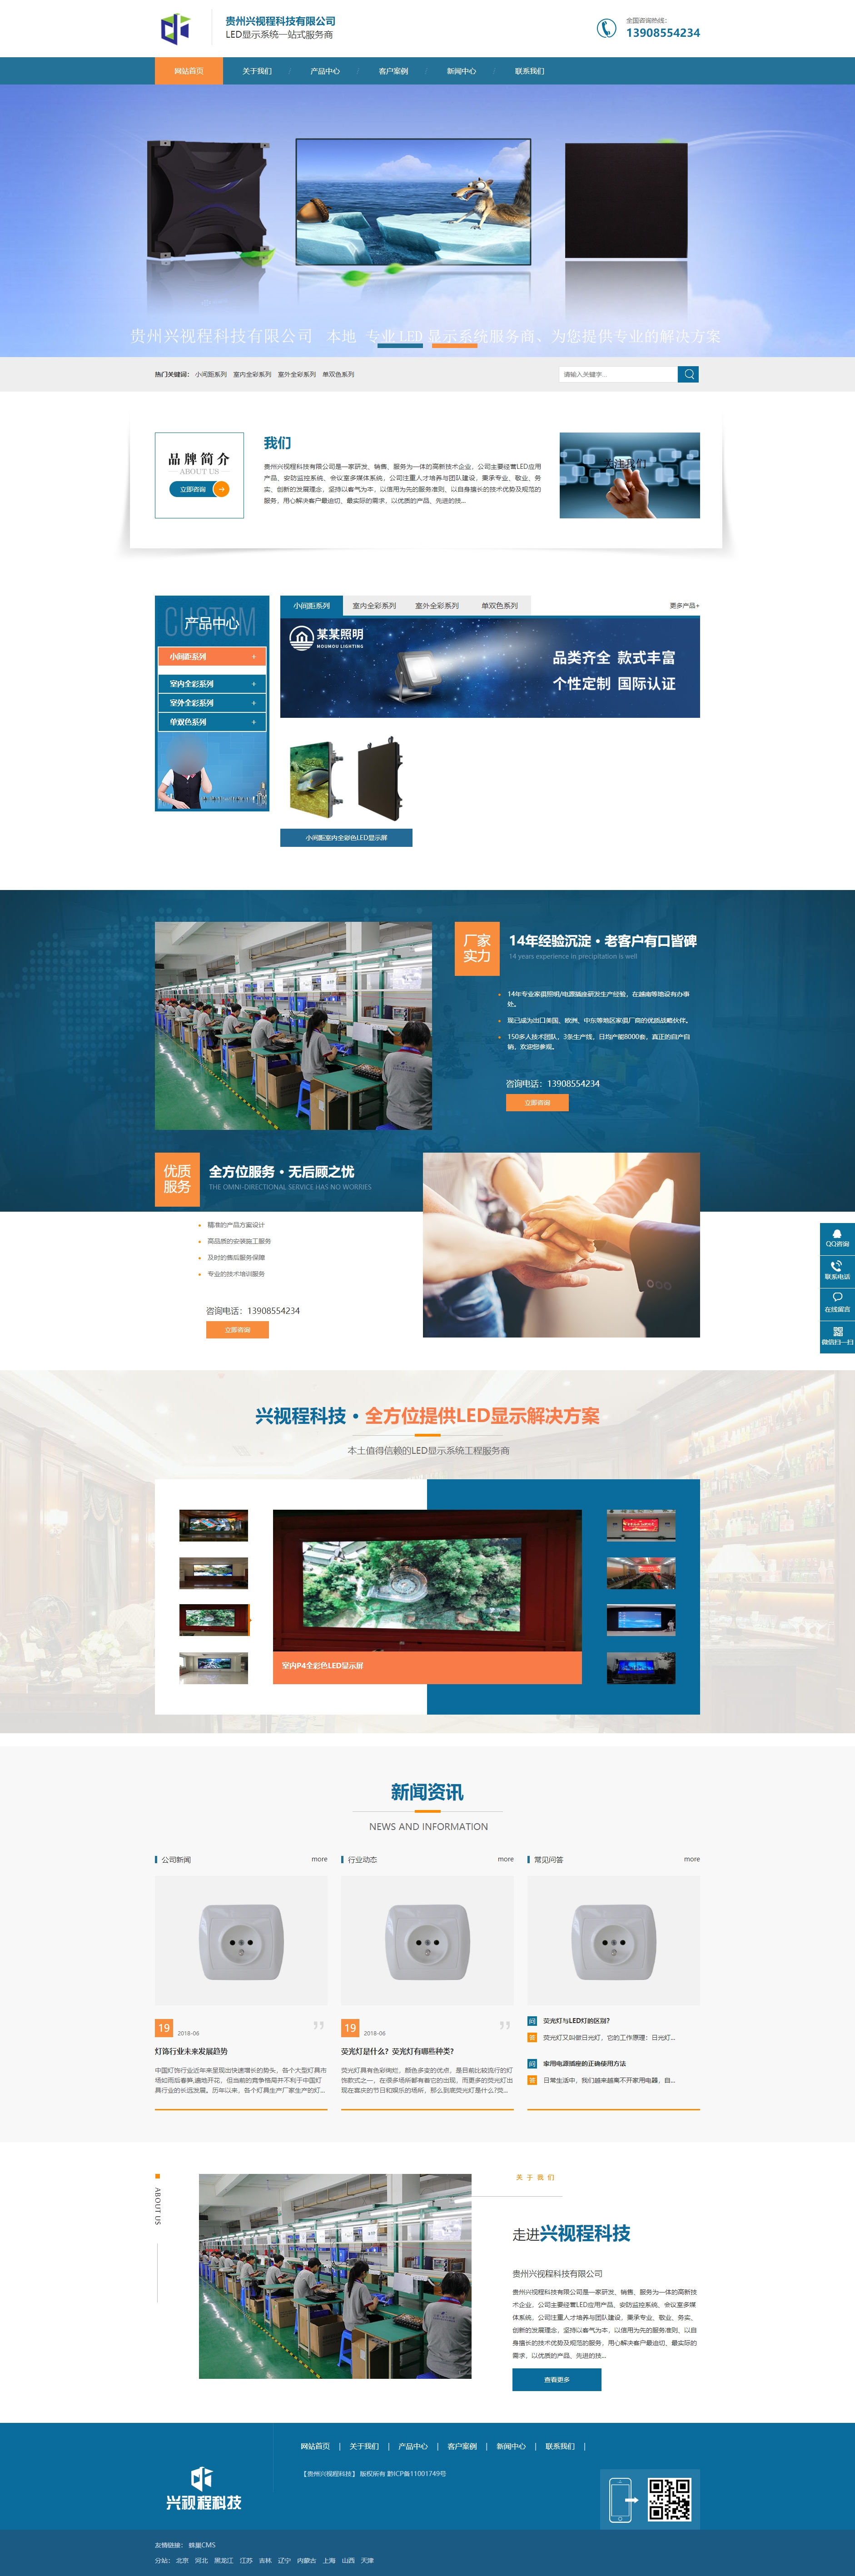 南明贵州兴视程科技有限公司 网站正式上线